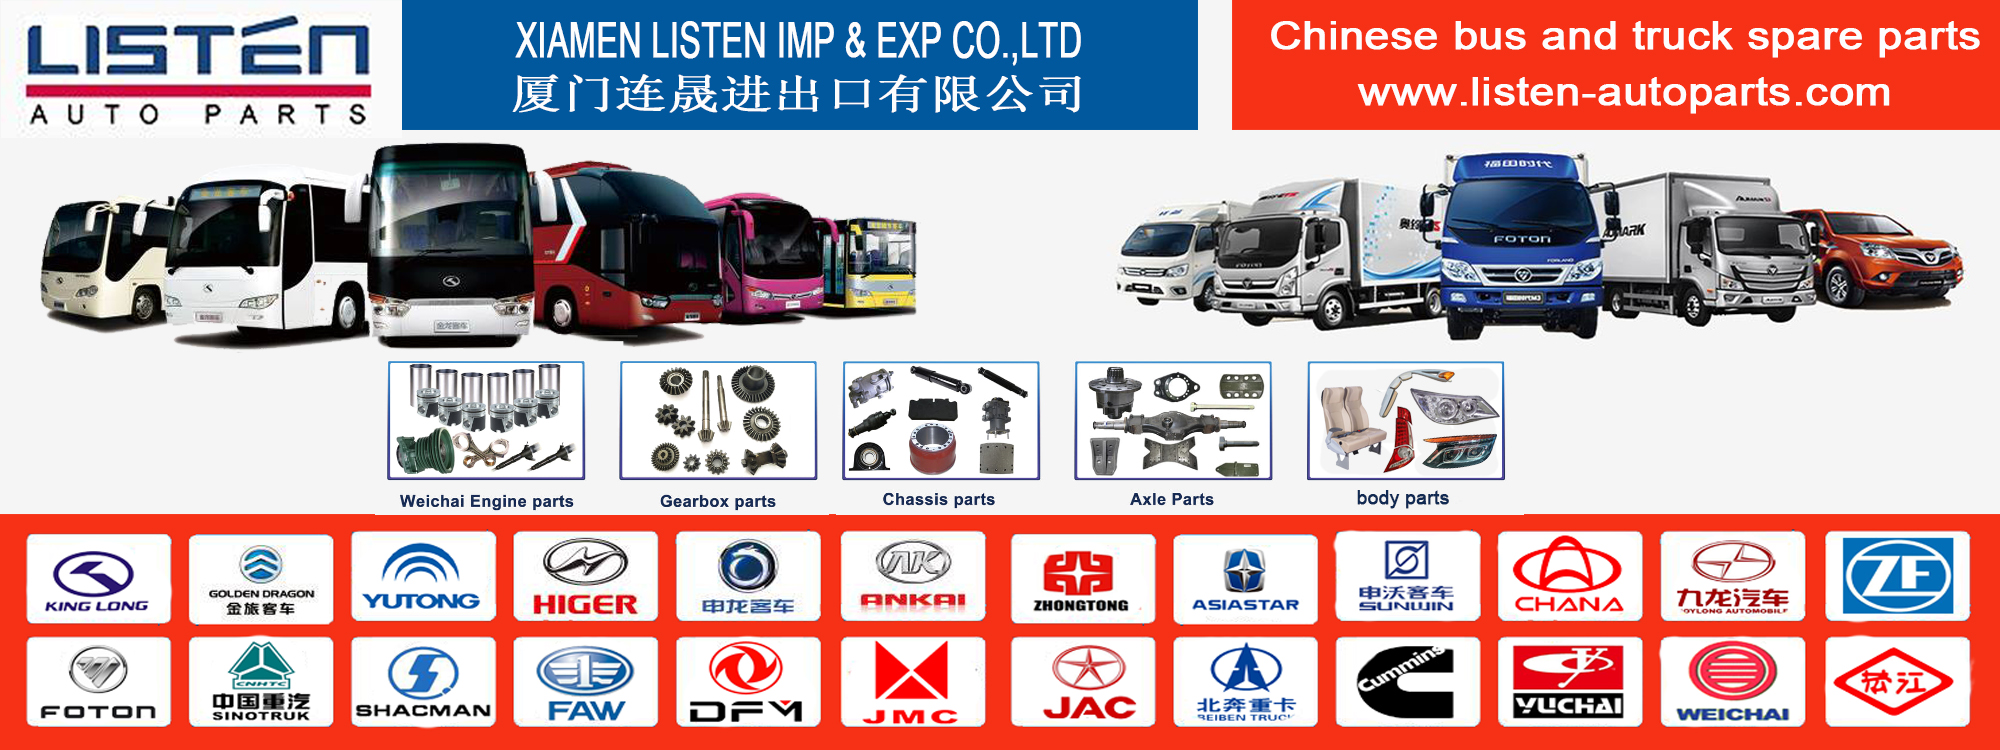 Xiamen Luister Imp & EXP Co., Ltd